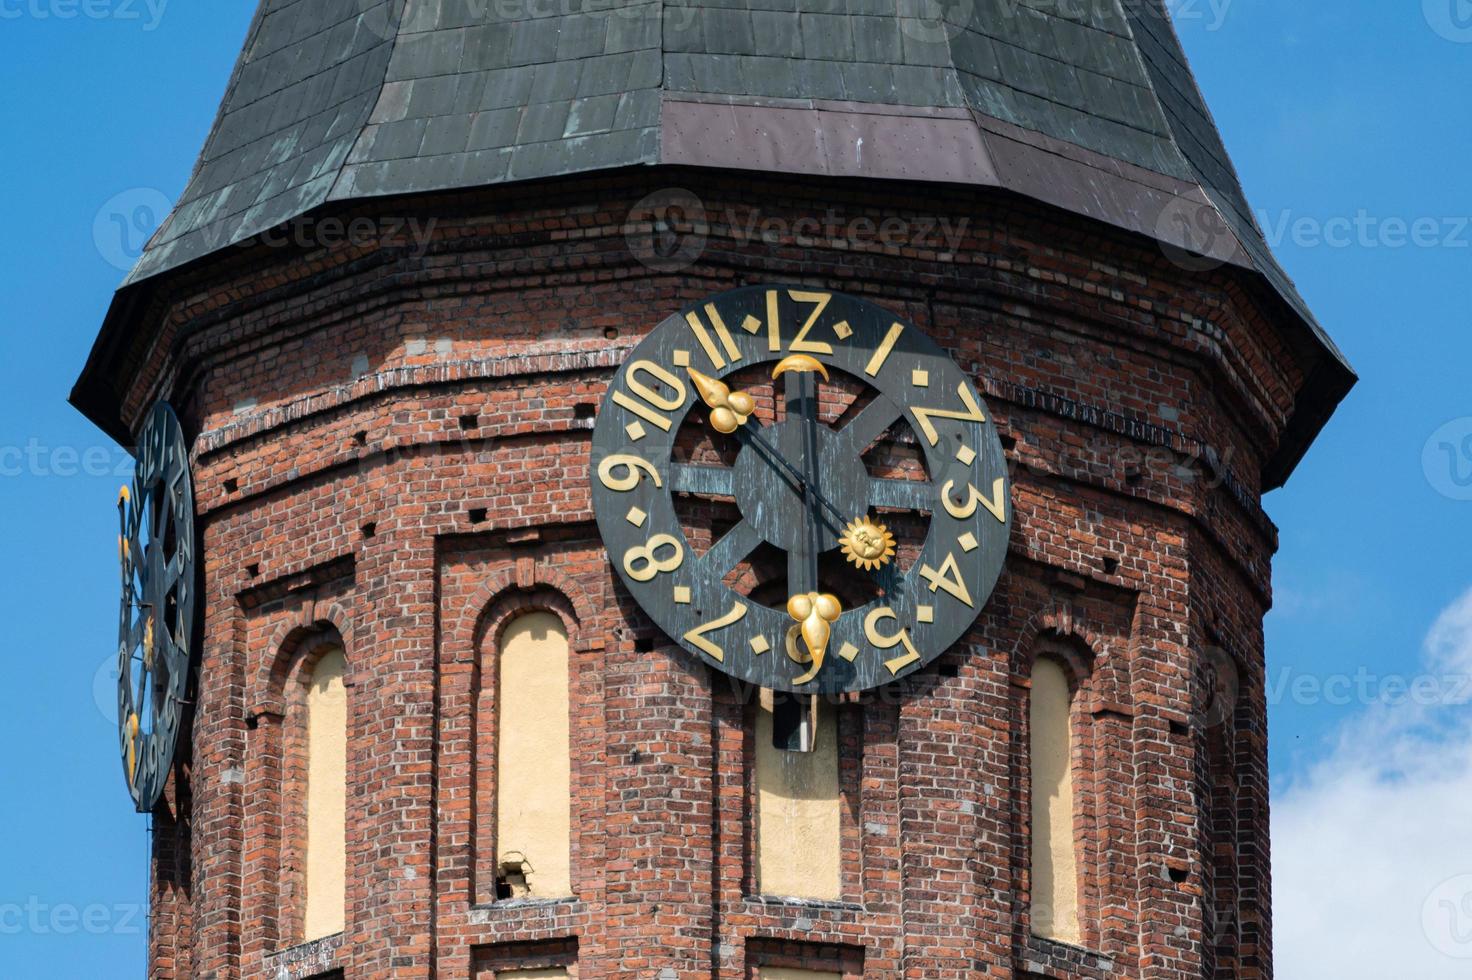 torre dell'orologio della cattedrale di konigsberg. monumento in stile gotico in mattoni a kaliningrad, russia. Emanuele Kant isola. foto